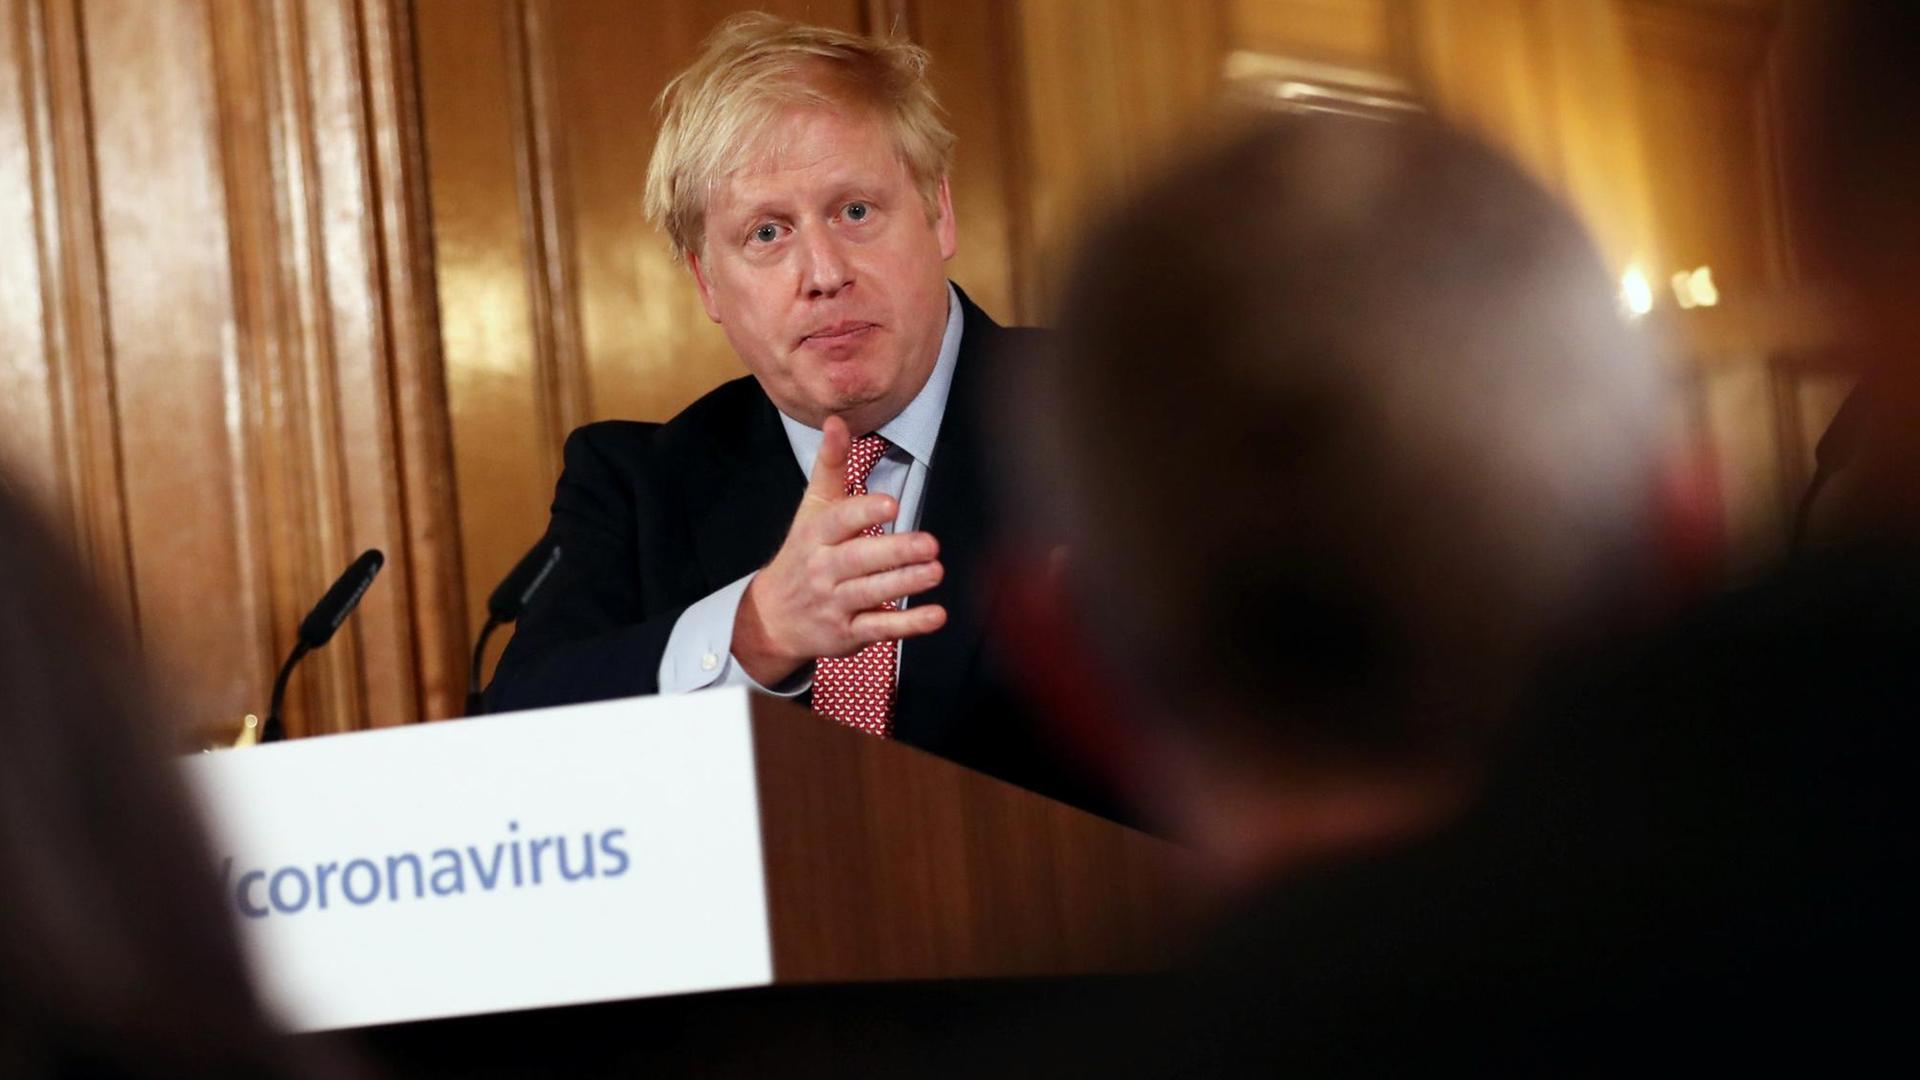 Der britische Premierminister Boris Johnson während einer Pressekonferenz, in der es um die Vorgehensweise der Regierung im Umgang mit dem Coronavirus geht